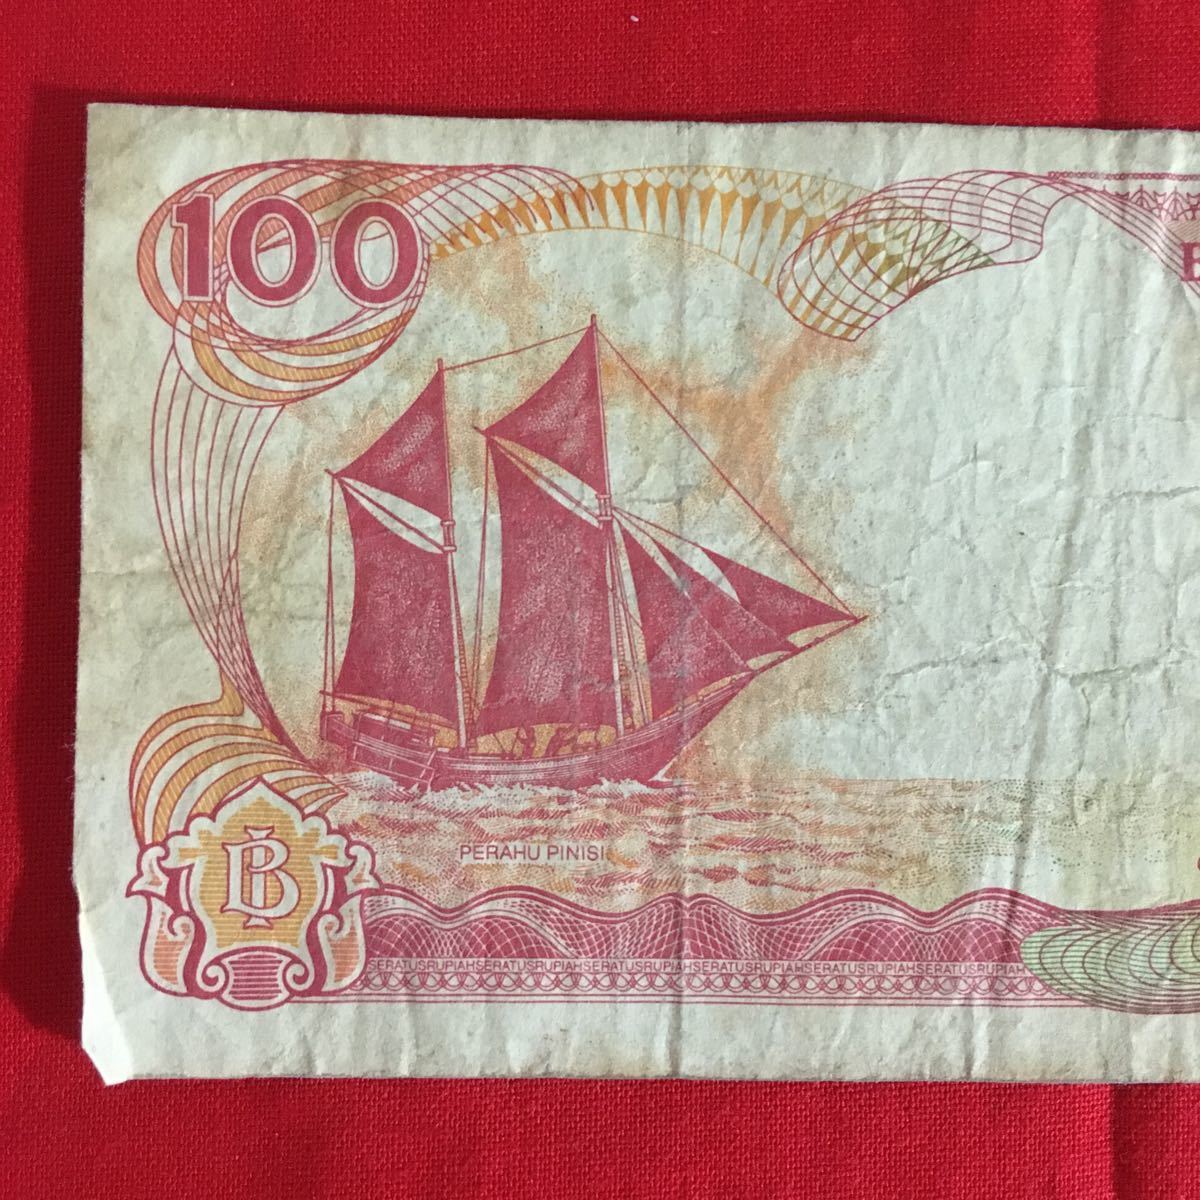 ★ インドネシア紙幣 ★ 100ルピア 2枚セット ★ 美品 希少 折り目なし 古いお金 コレクション 外国紙幣 海外紙幣_画像5